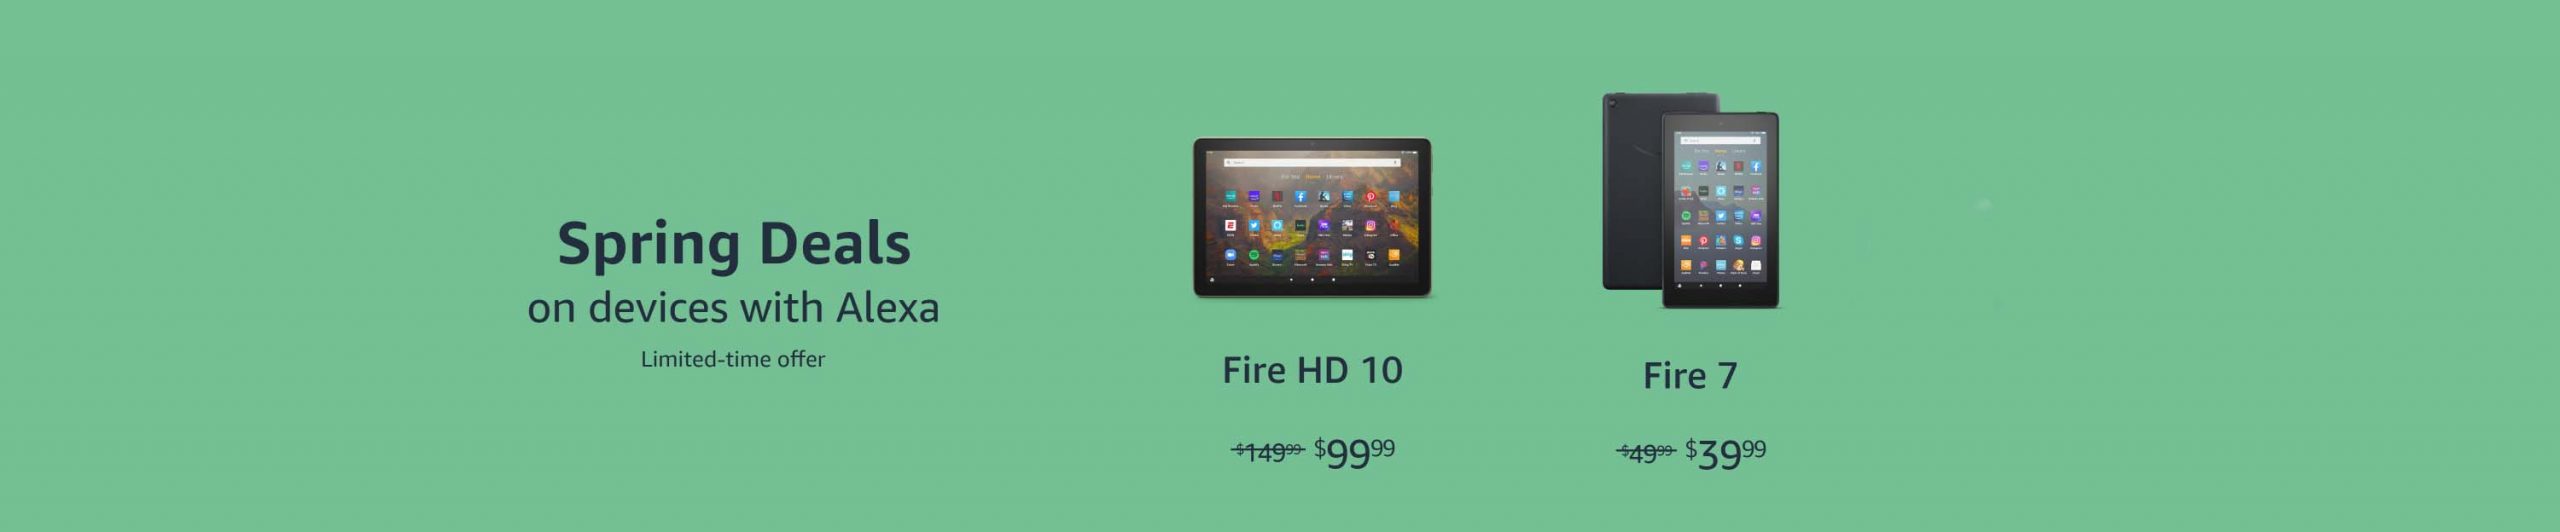 Fire 7, Fire HD 10